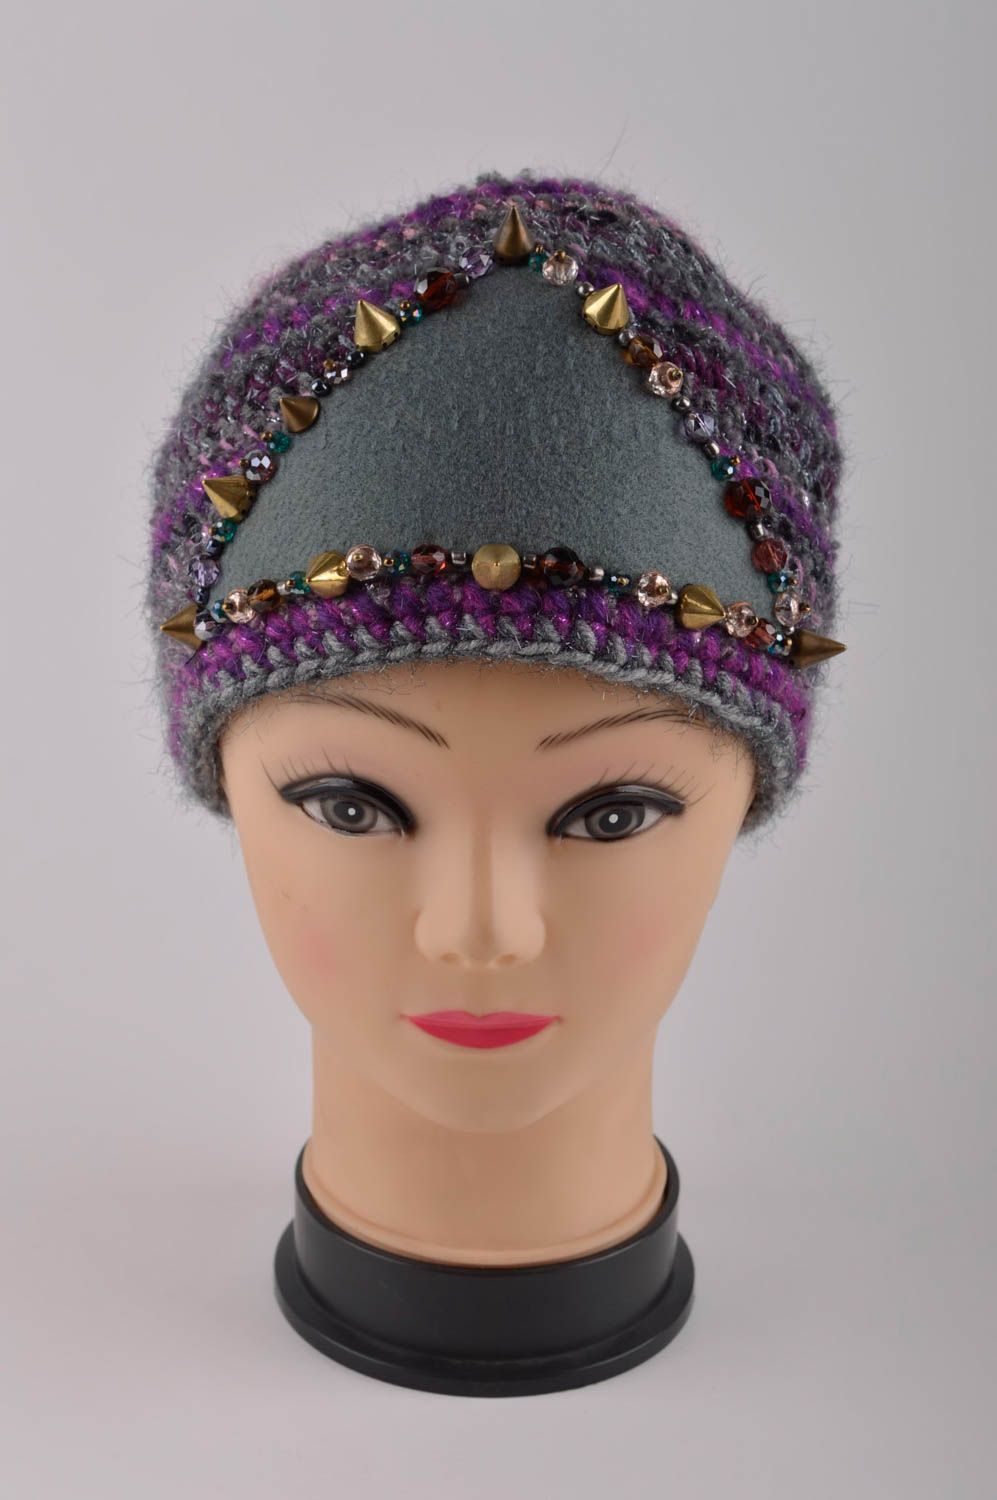 Handmade warm hat designer accessory for girls woolen hat warm hat unusual gift photo 3